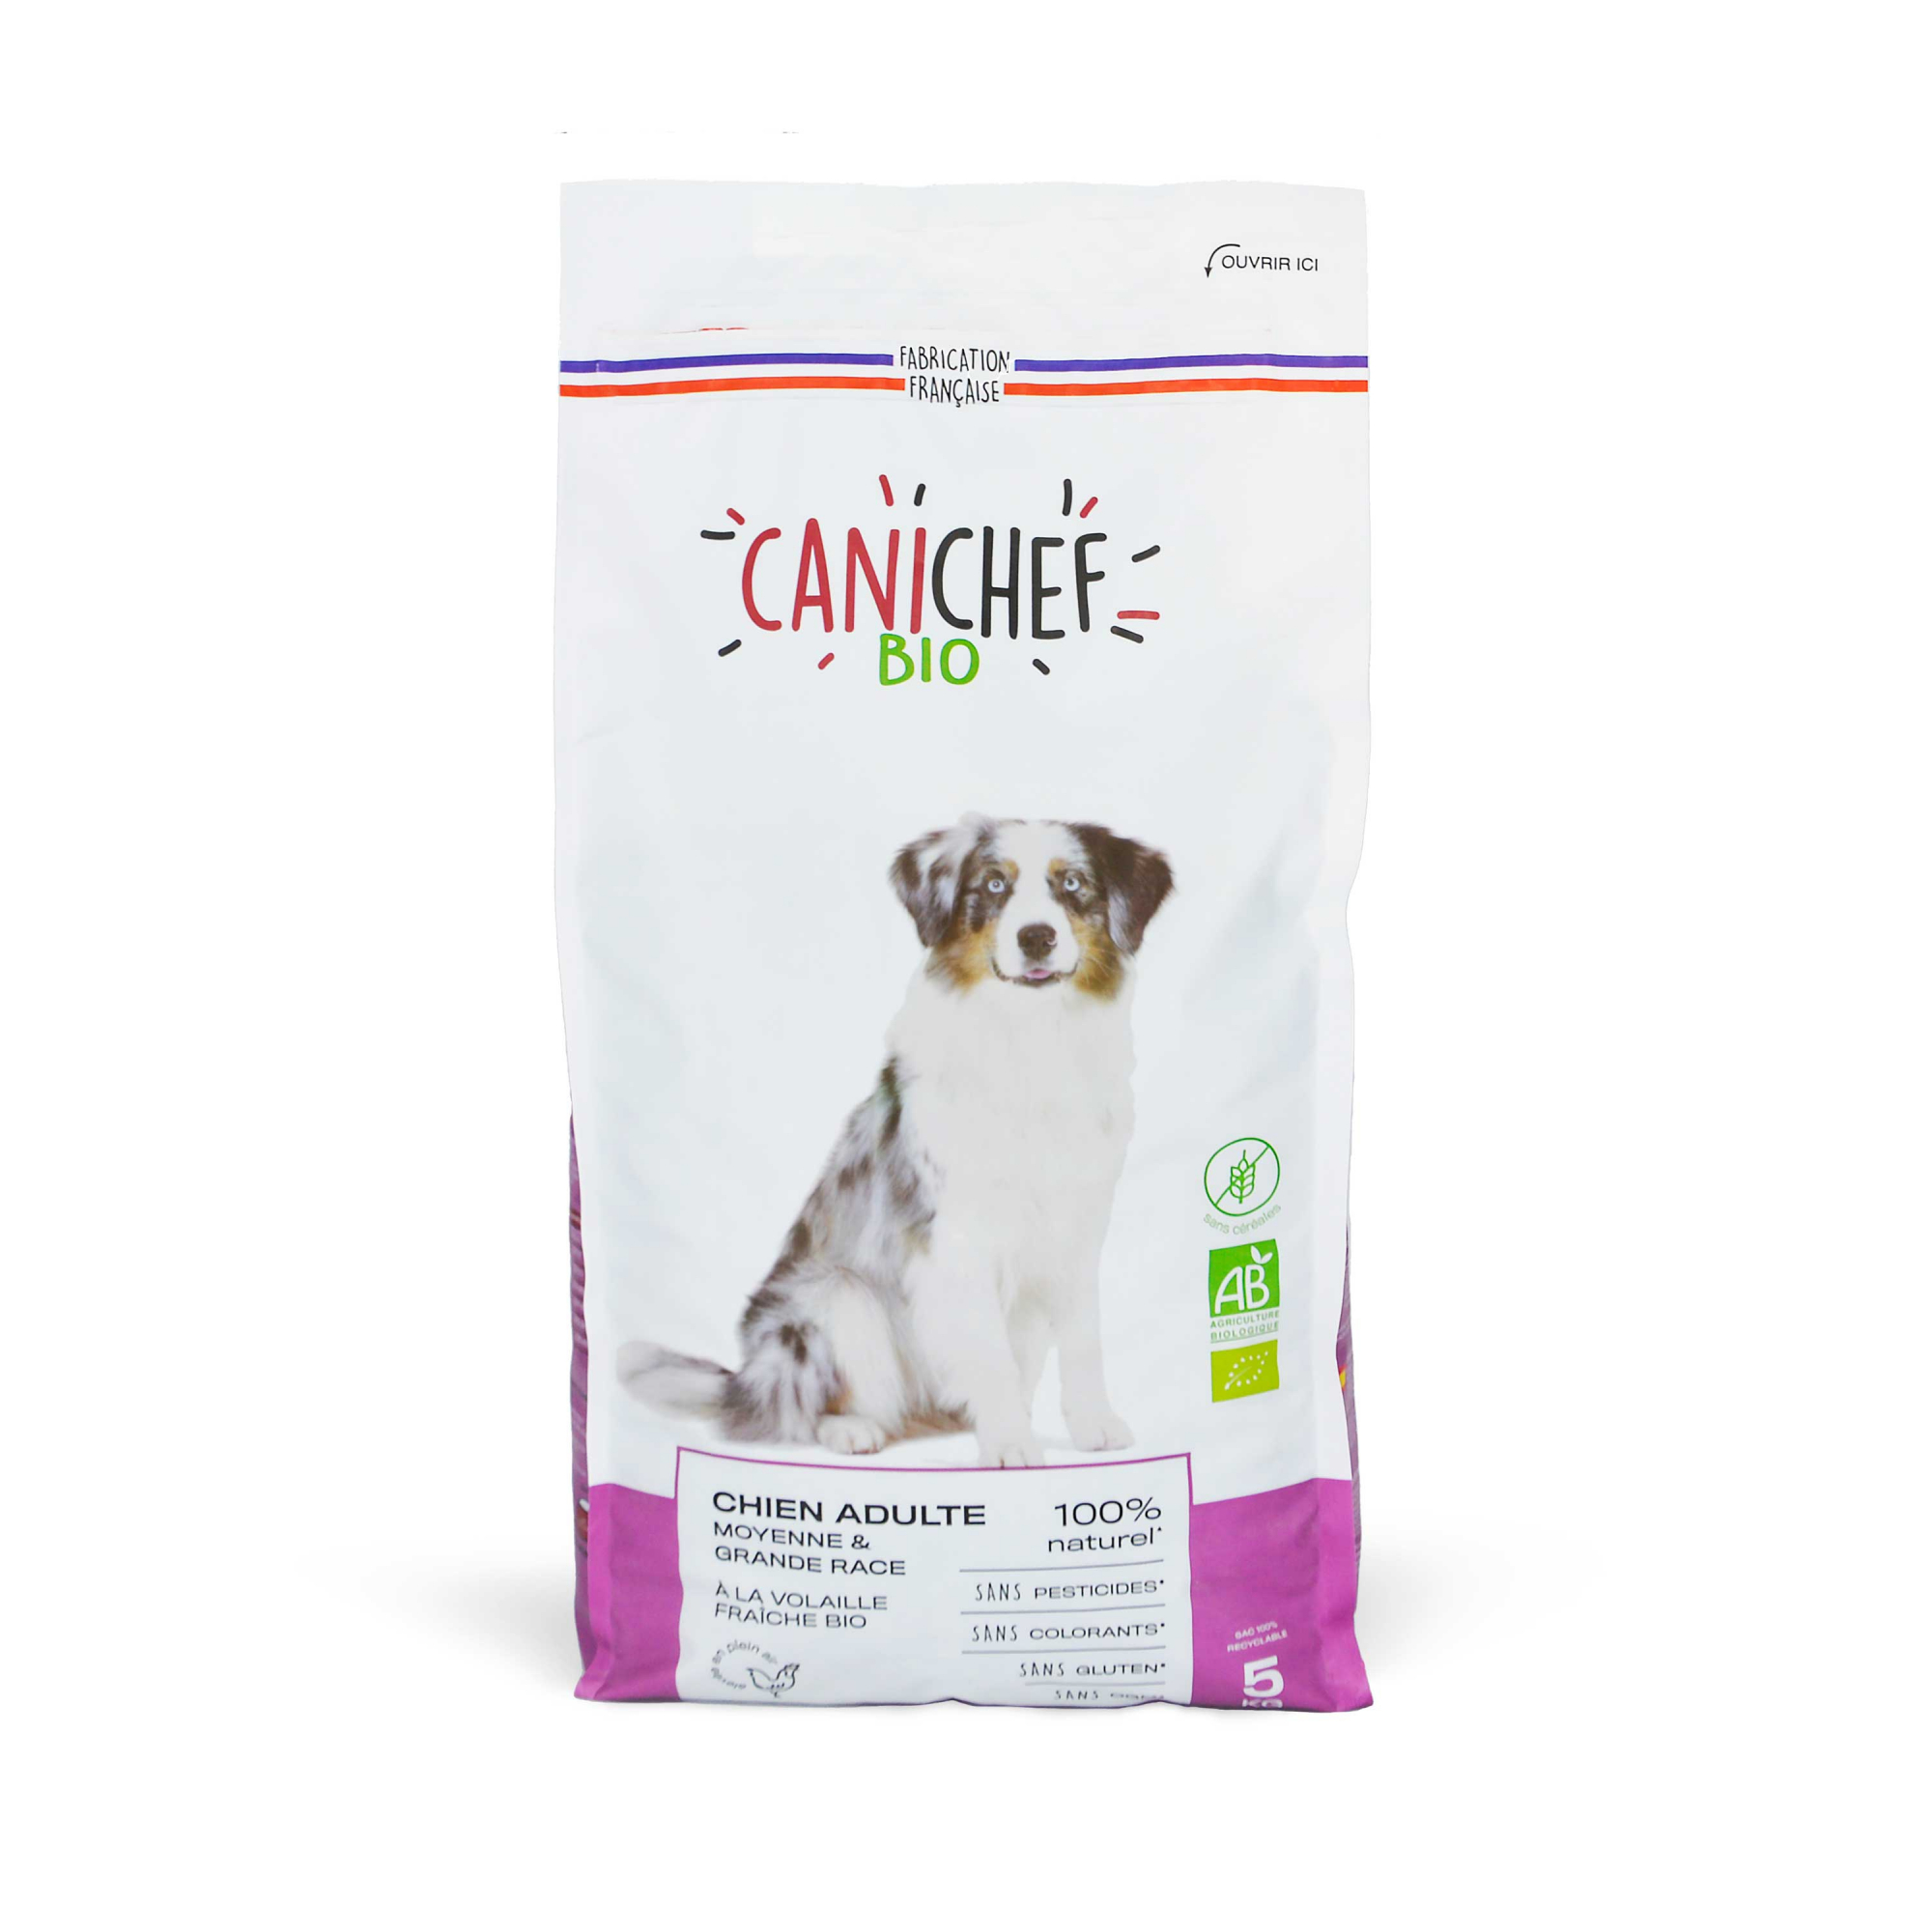 CANICHEF BIO Pienso sin cereales para perros Medium / Maxi